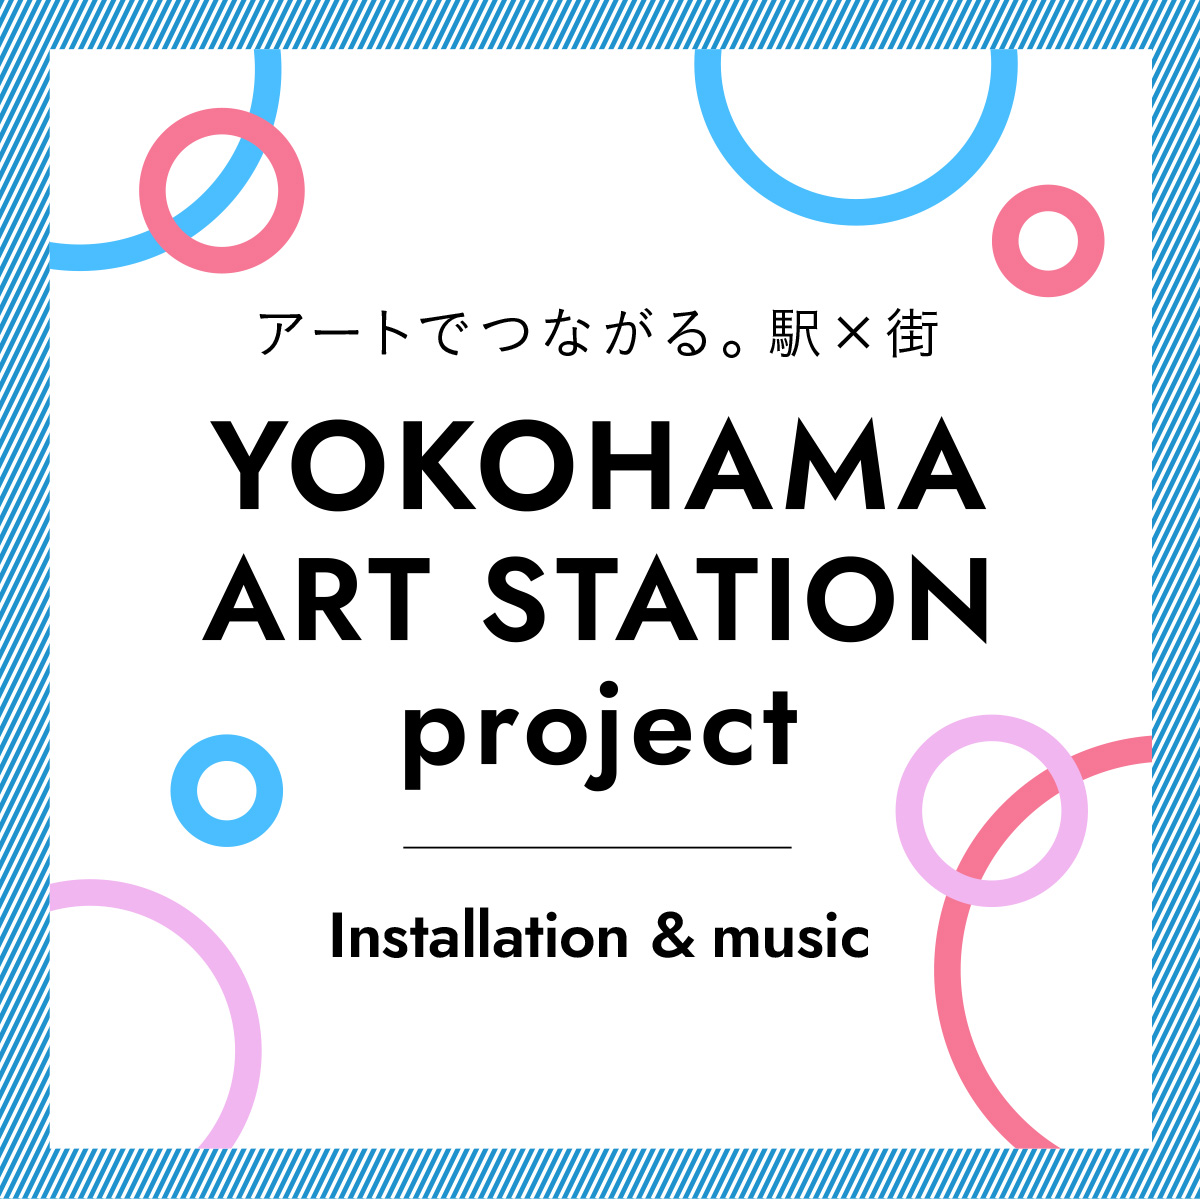 アートでつながる。駅×街 YOKOHAMA ART STATION project Installation&music